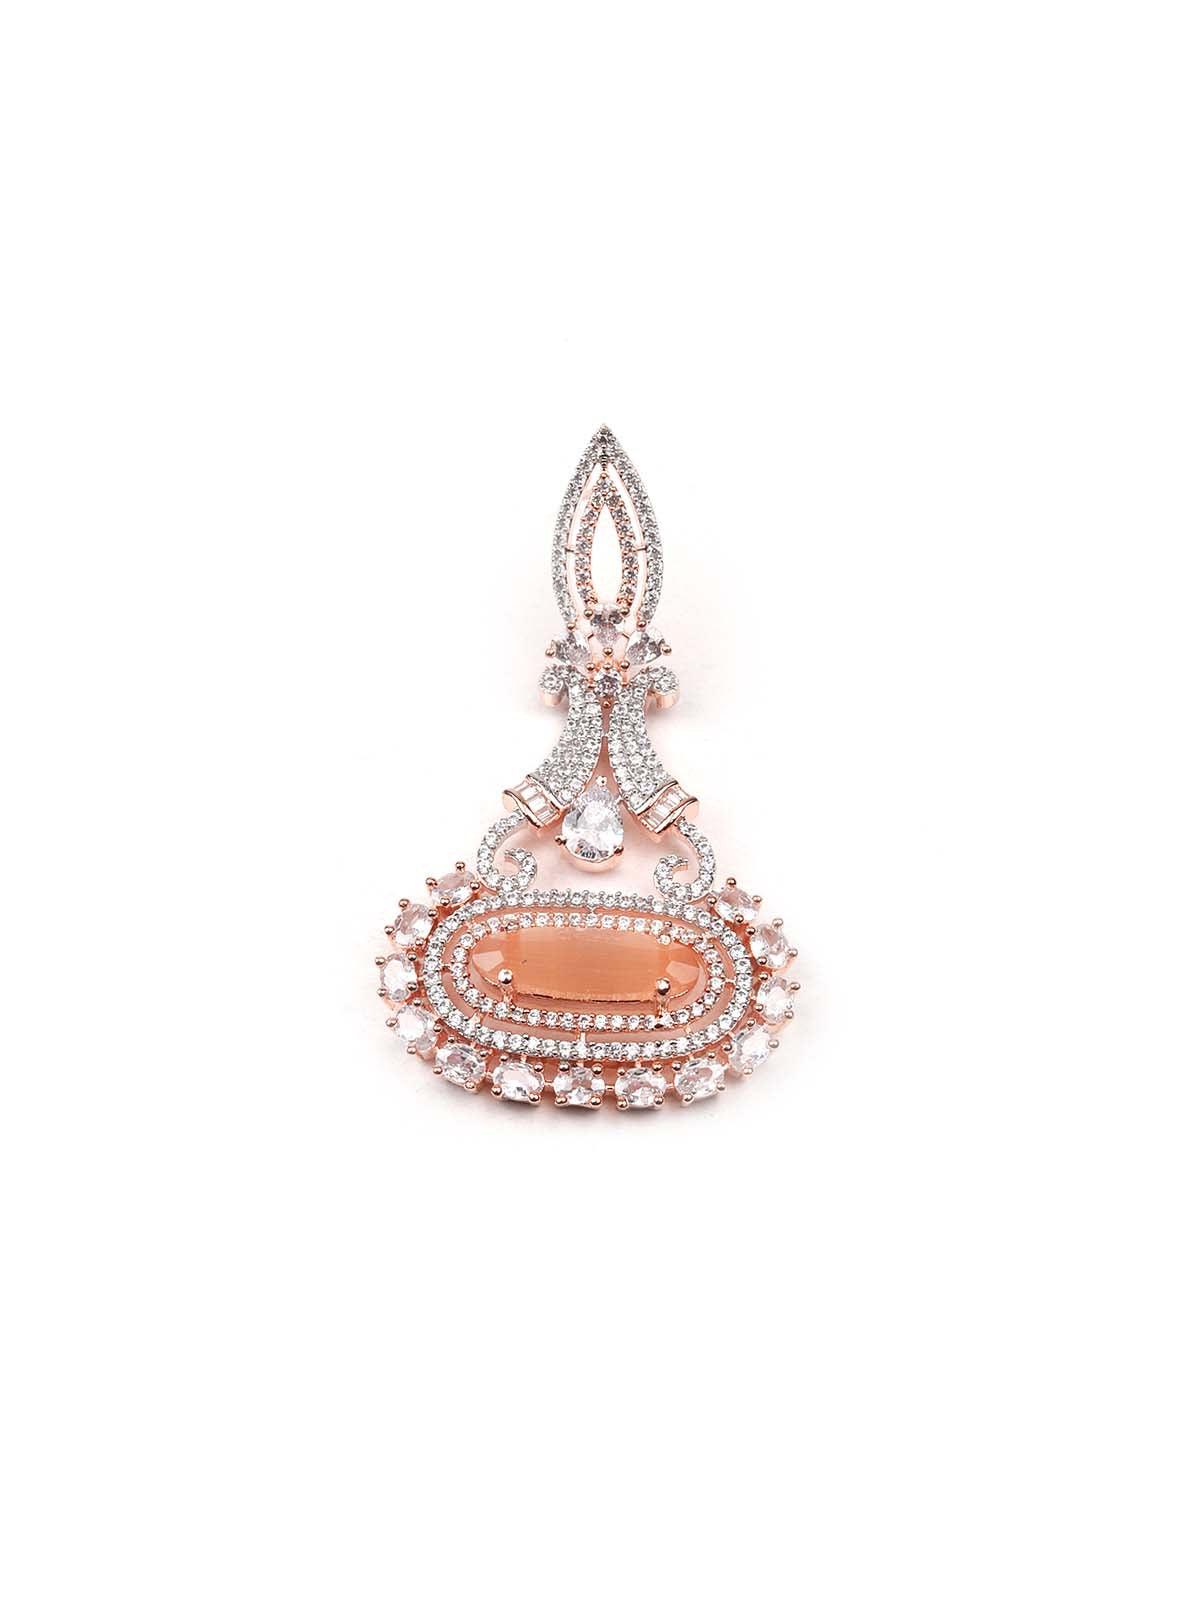 Elegant stunning peach dangle earrings - Odette